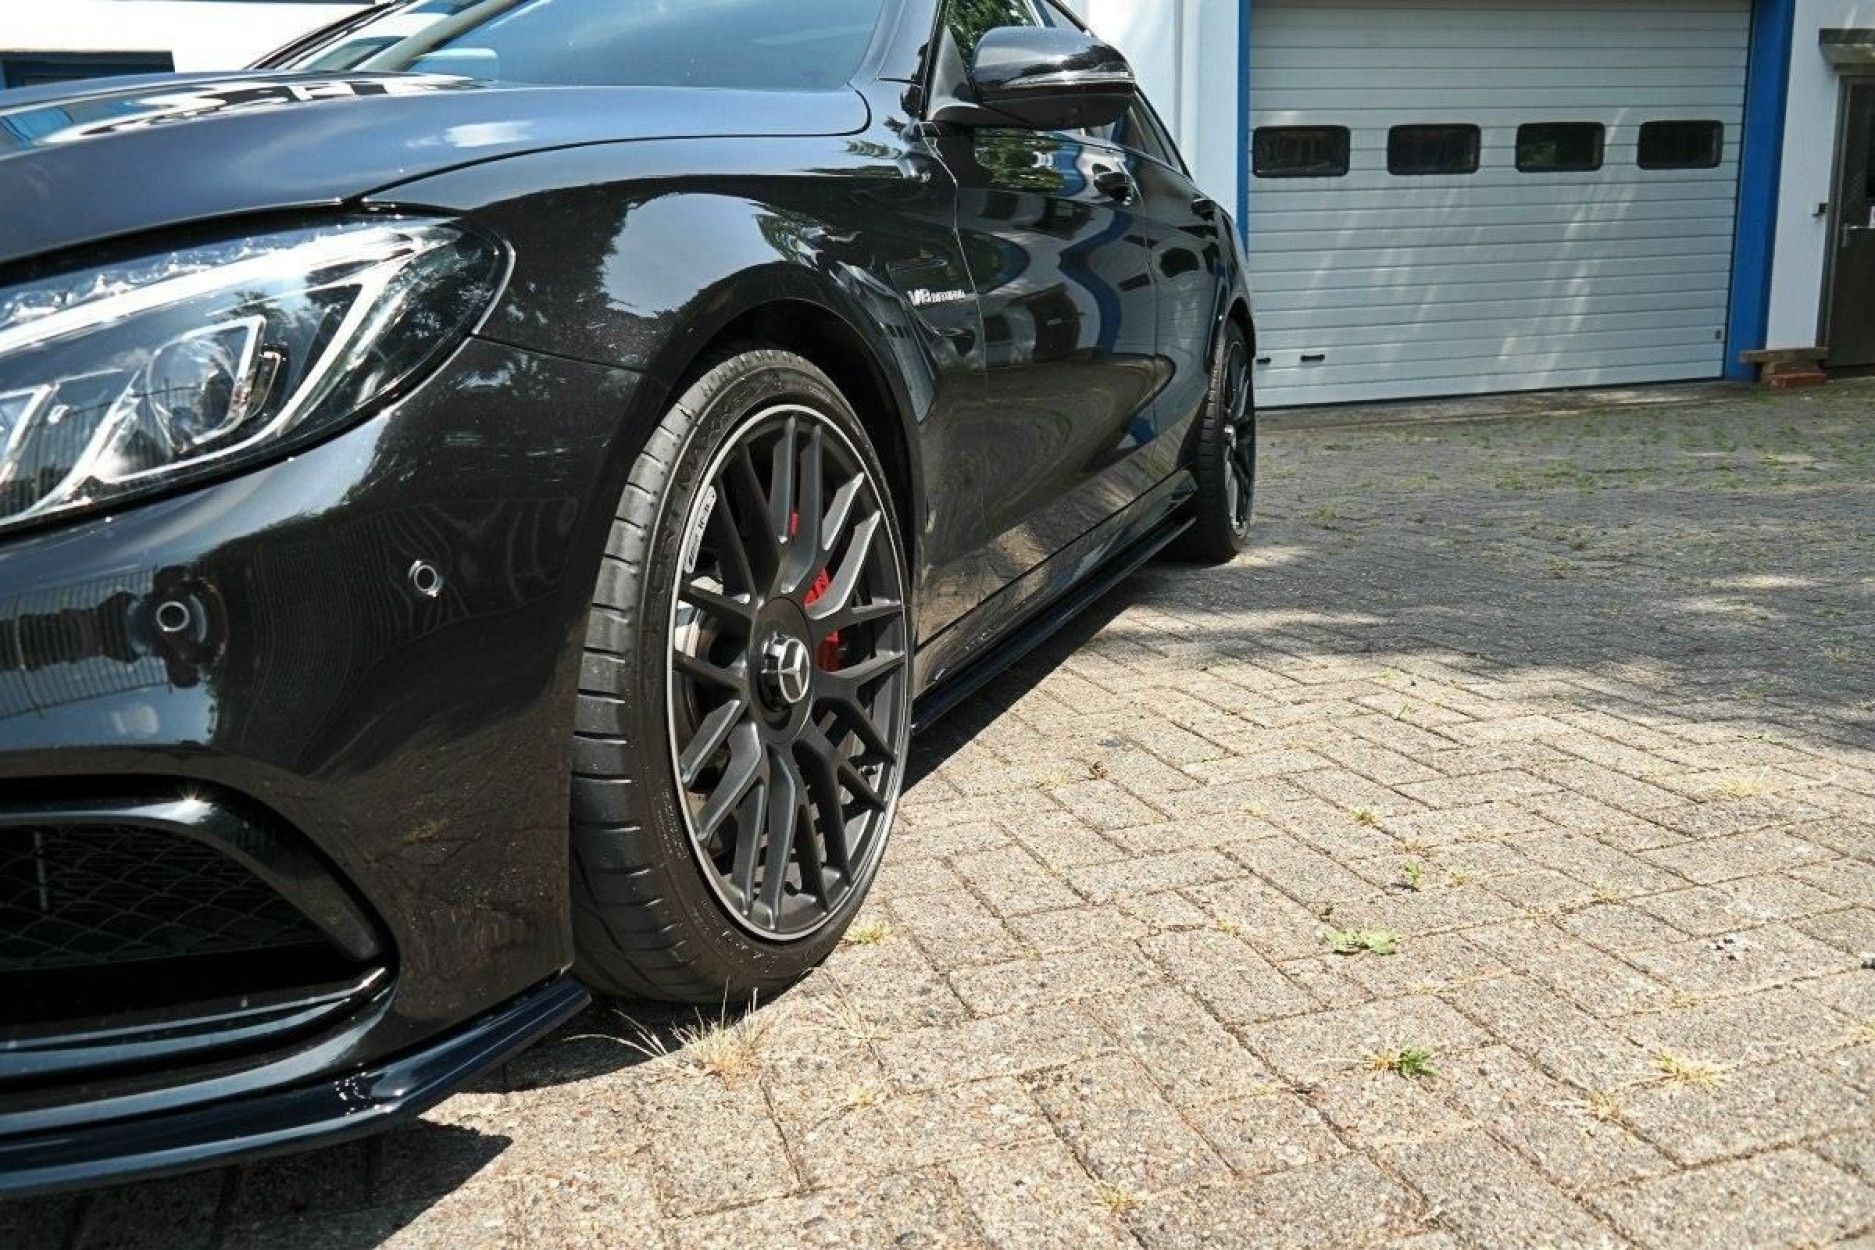 Maxton Seitenschweller Ansatz für Mercedes-Benz C W205 schwarz Hochglanz  ME-C-205-SD1-G - Online-Shop